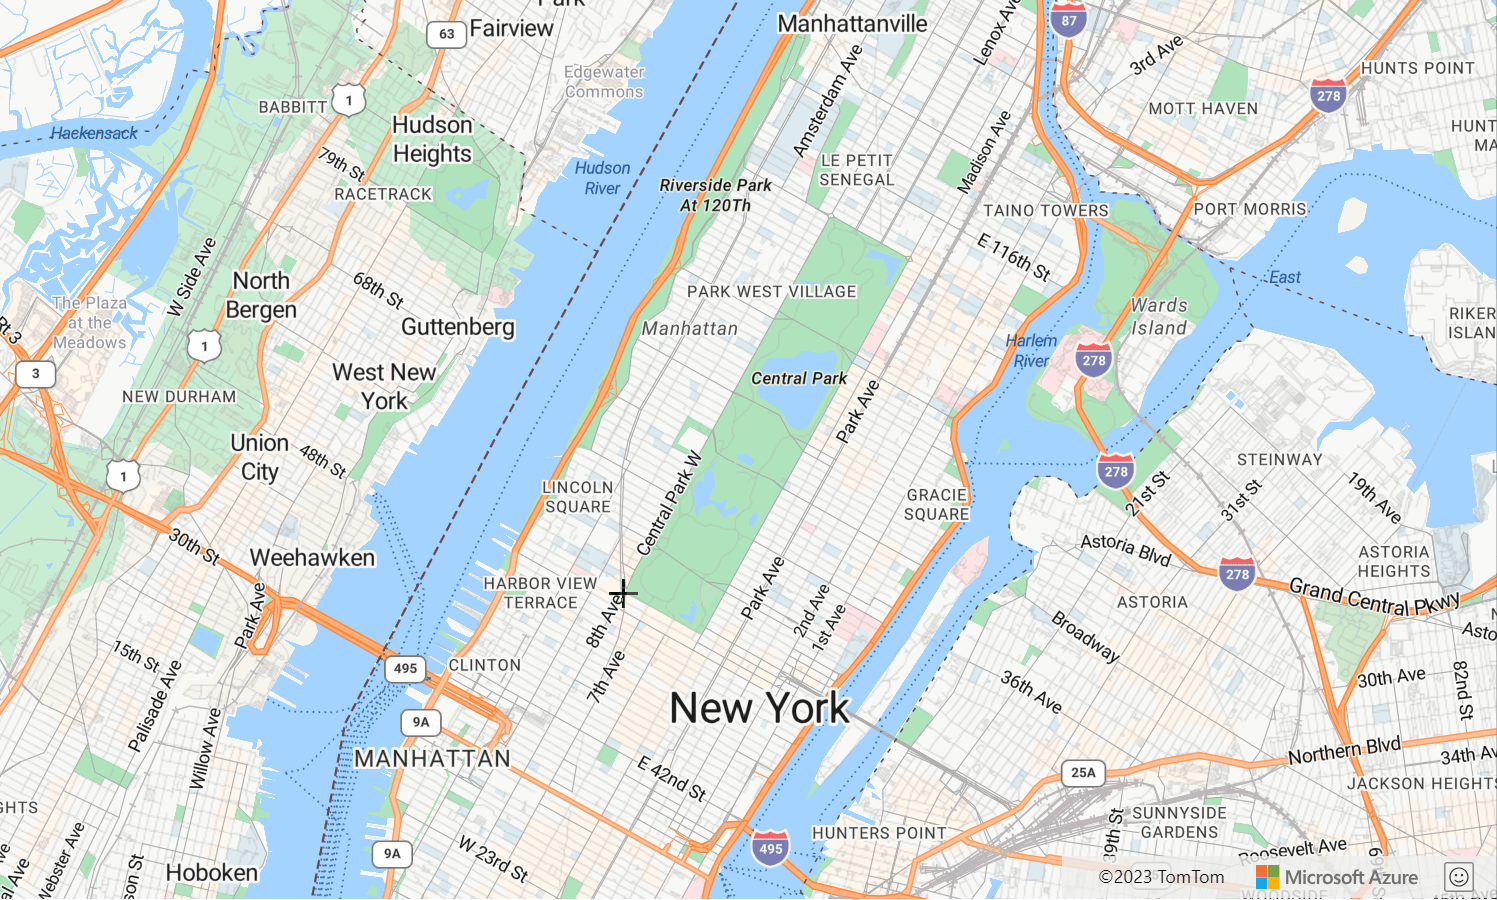 Een schermopname van een kaart met Central Park in New York City, waar de tekenmanager wordt gedemonstreerd door een tekenlijn.